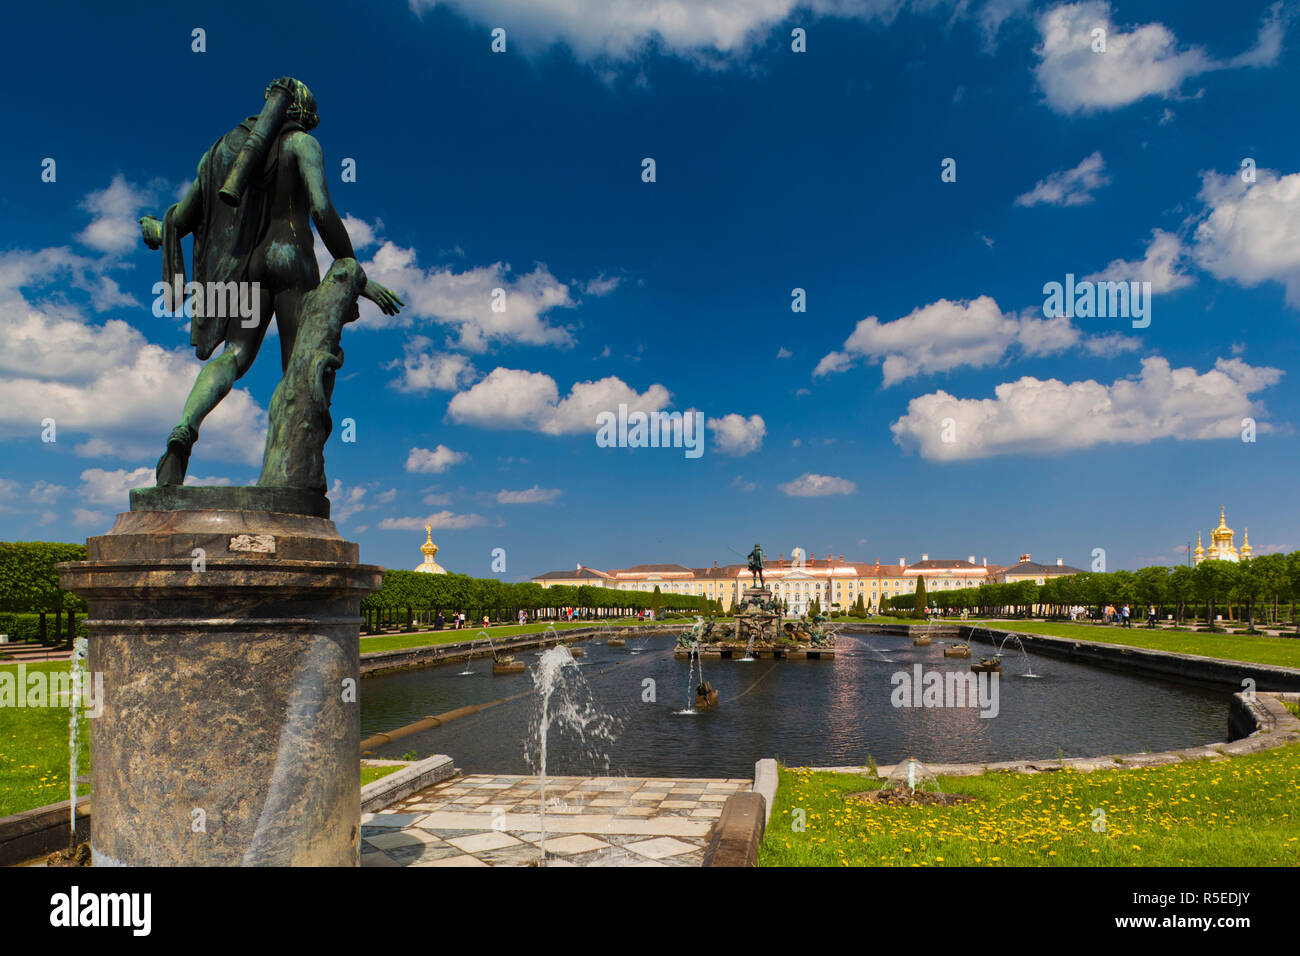 La Russie, Saint-Pétersbourg, Peterhof, Grand Palais Banque D'Images